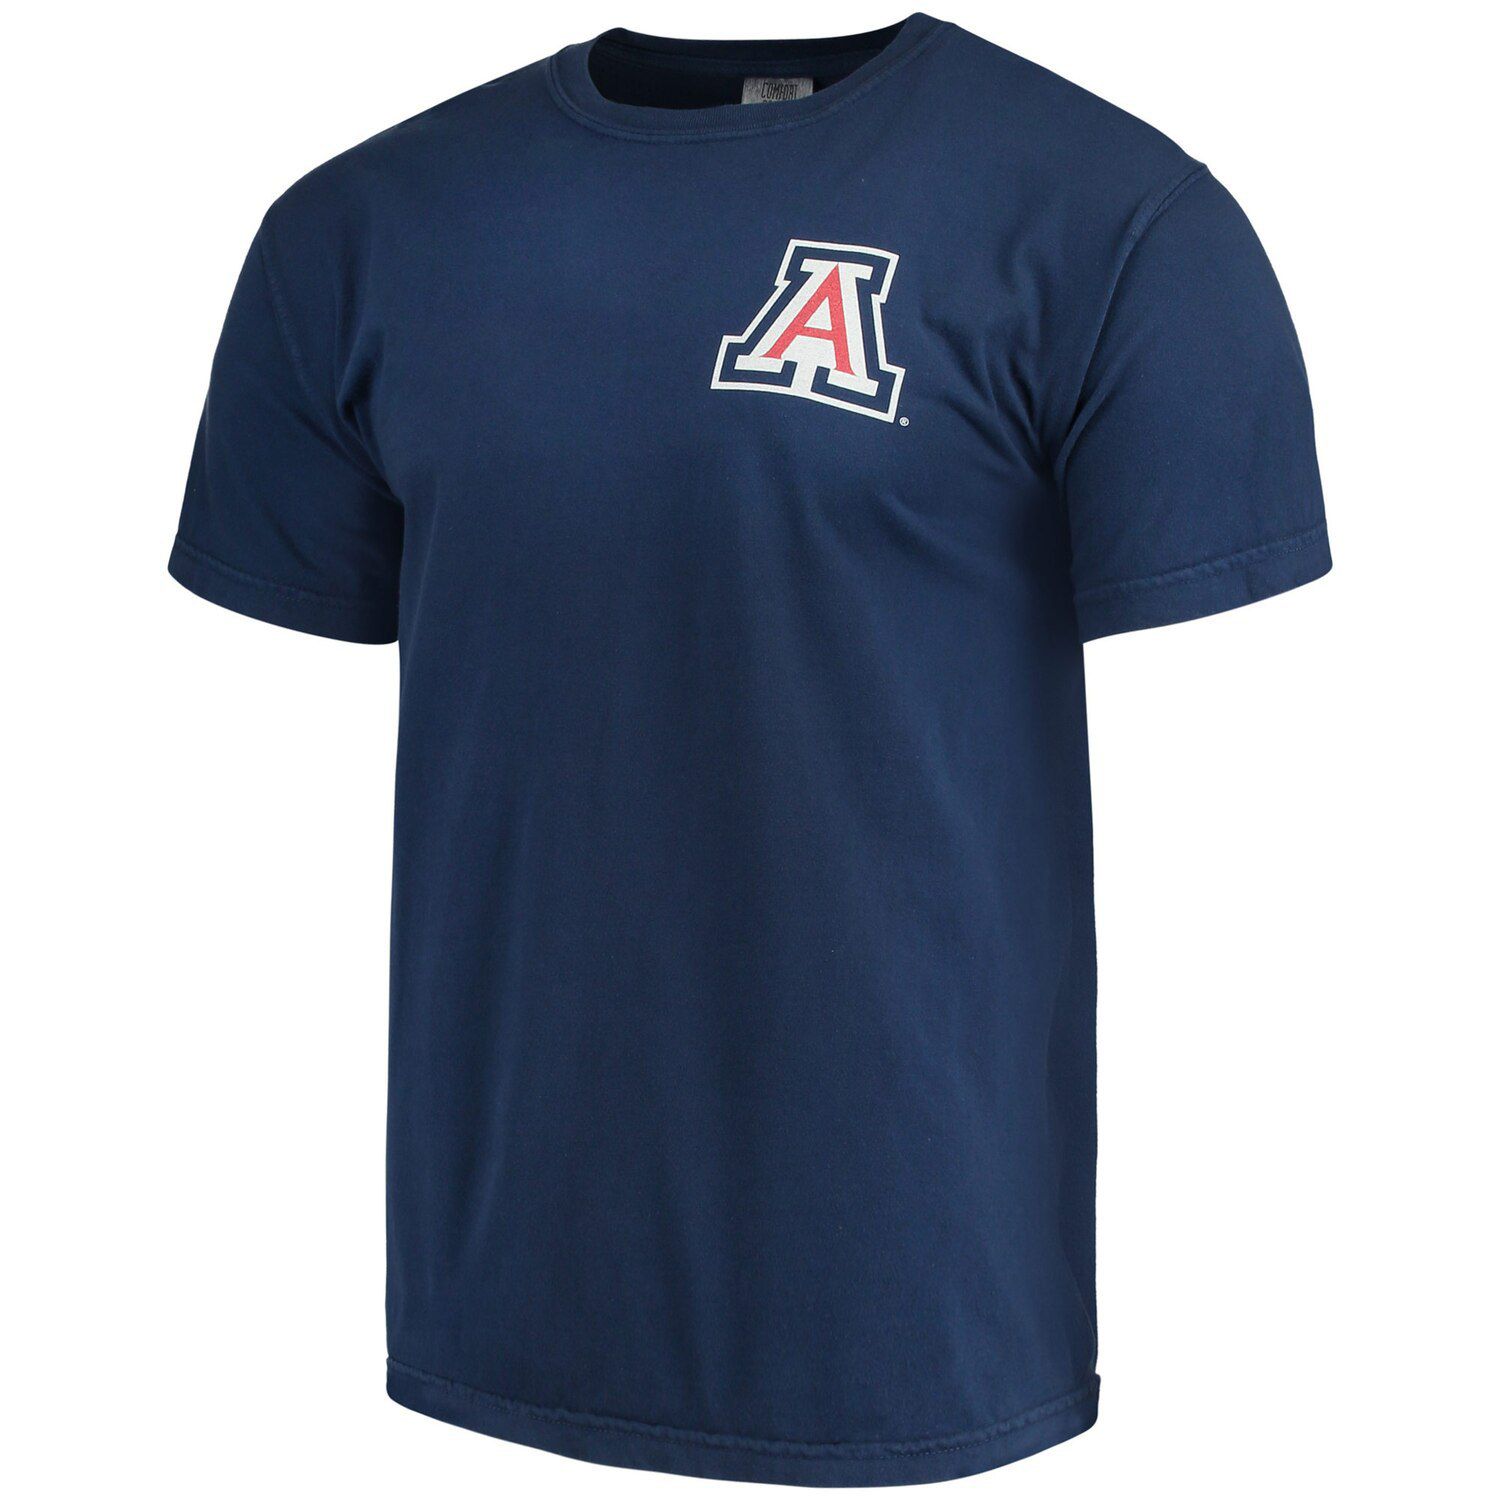 Мужская темно-синяя футболка с бейсбольным флагом Arizona Wildcats комфортных цветов